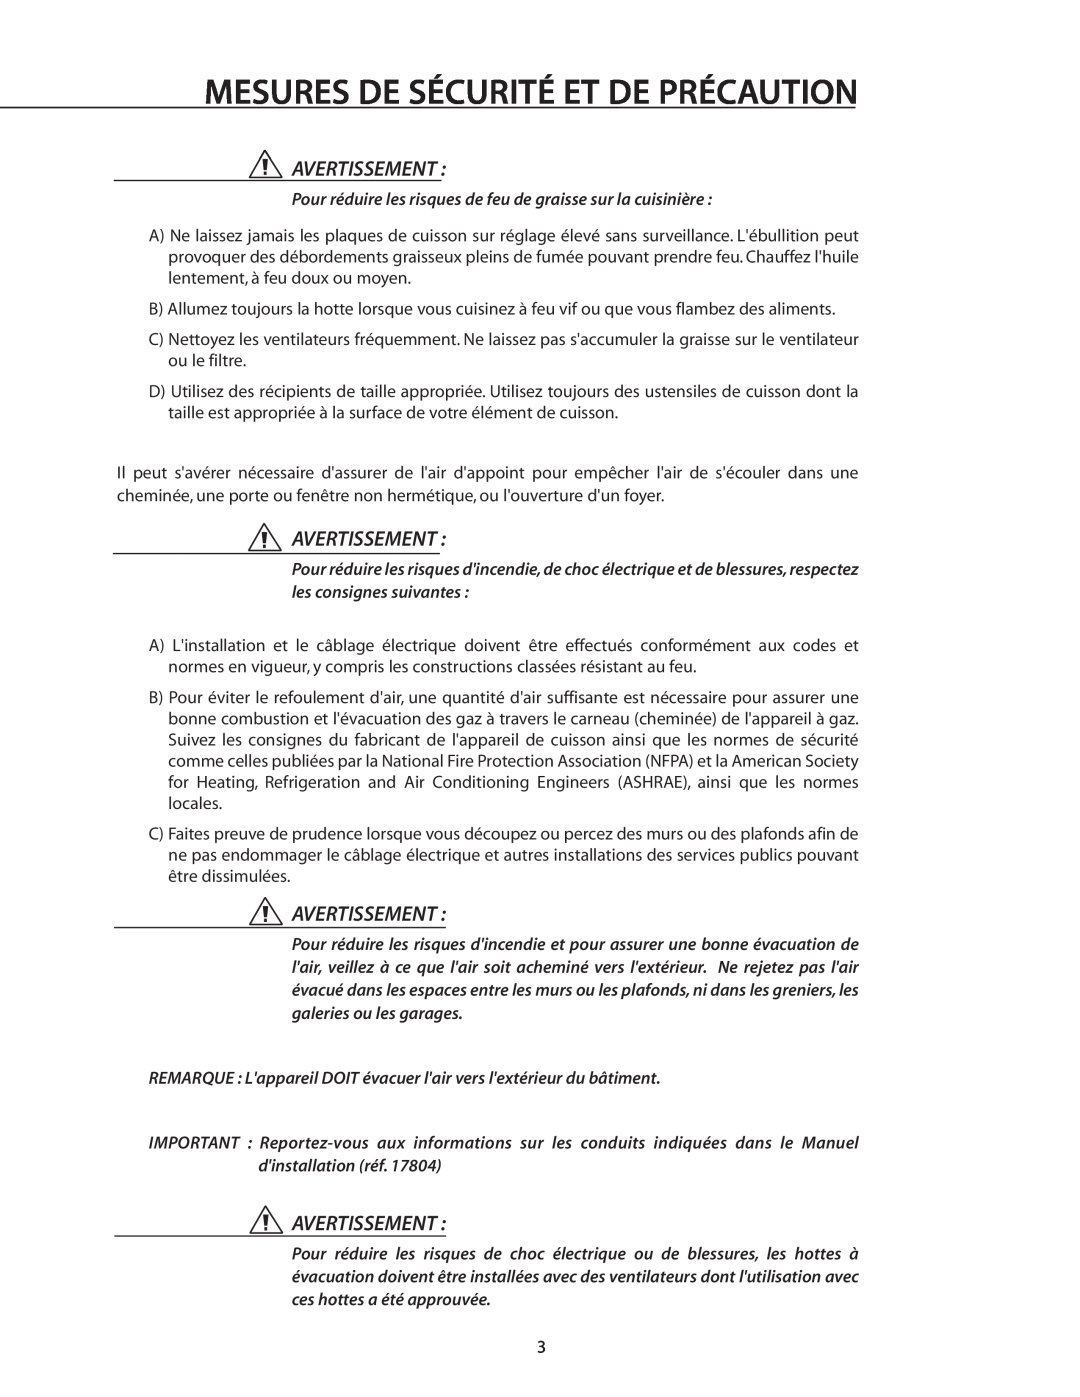 DCS IVS52, IVS40 manual Mesures De Sécurité Et De Précaution, Avertissement 